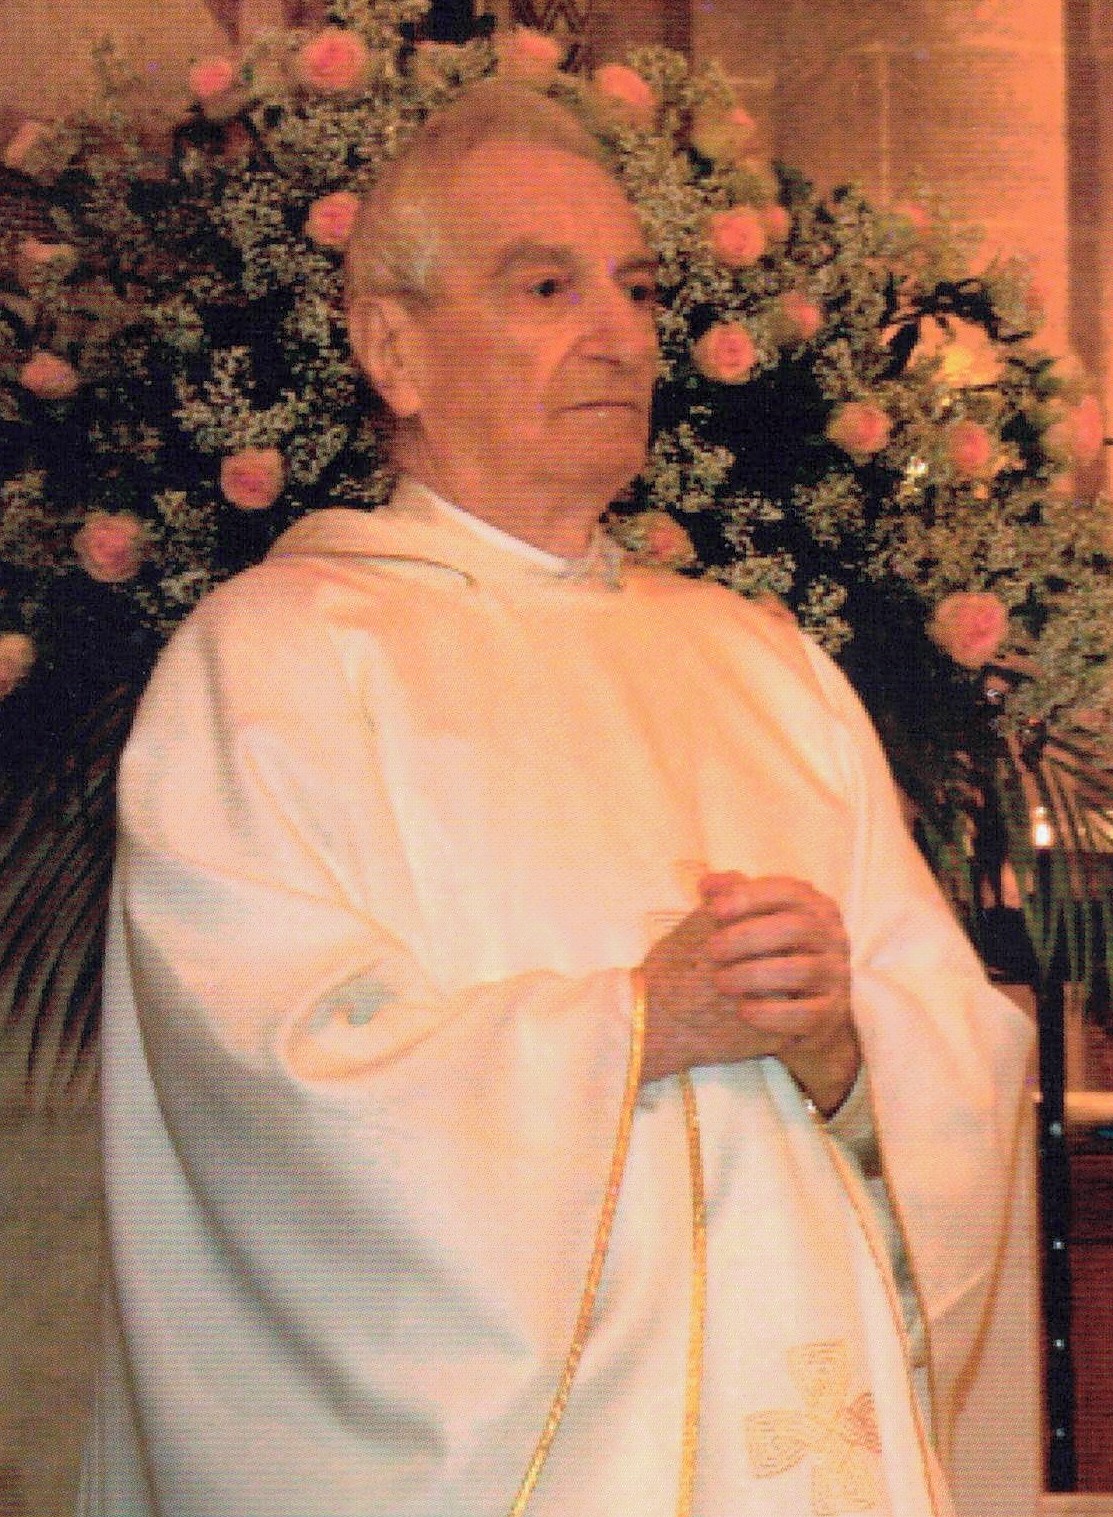 In memoria di padre Giuseppe Santoro o.p. nel decennale della sua scomparsa